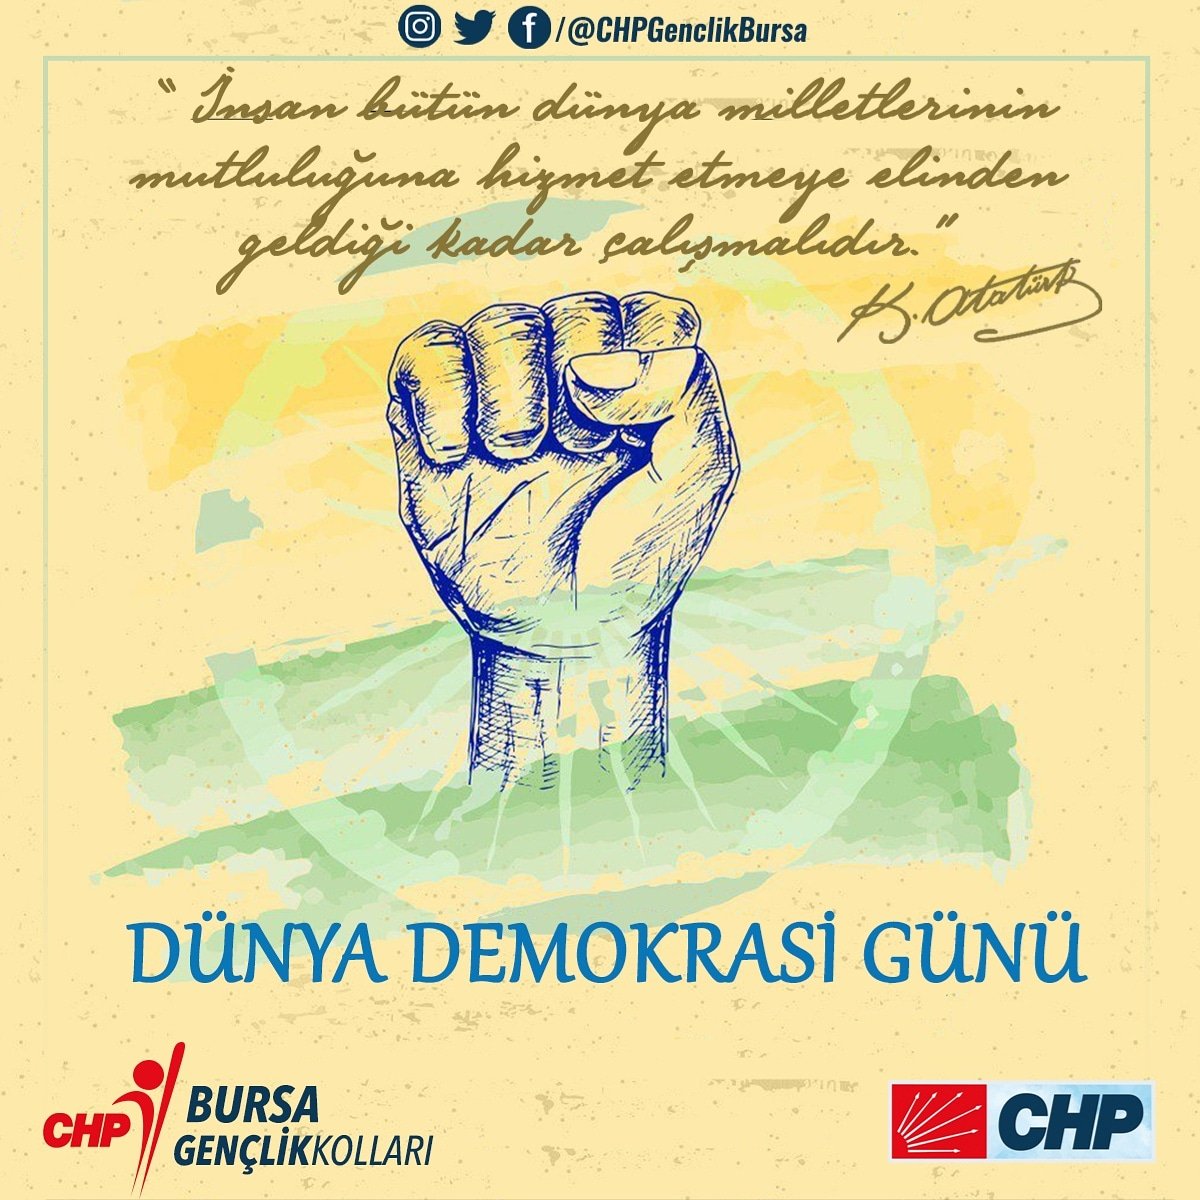 Atatürk gençliği olarak, ülkemizde ve dünyada insanların mutluluğu ve huzuru için çalışmak bizlerin vazifesidir.
Bunun yolu da 'Demokrasi' mücadelesine yılmadan devam etmektir.

#WorldDemocracyDay